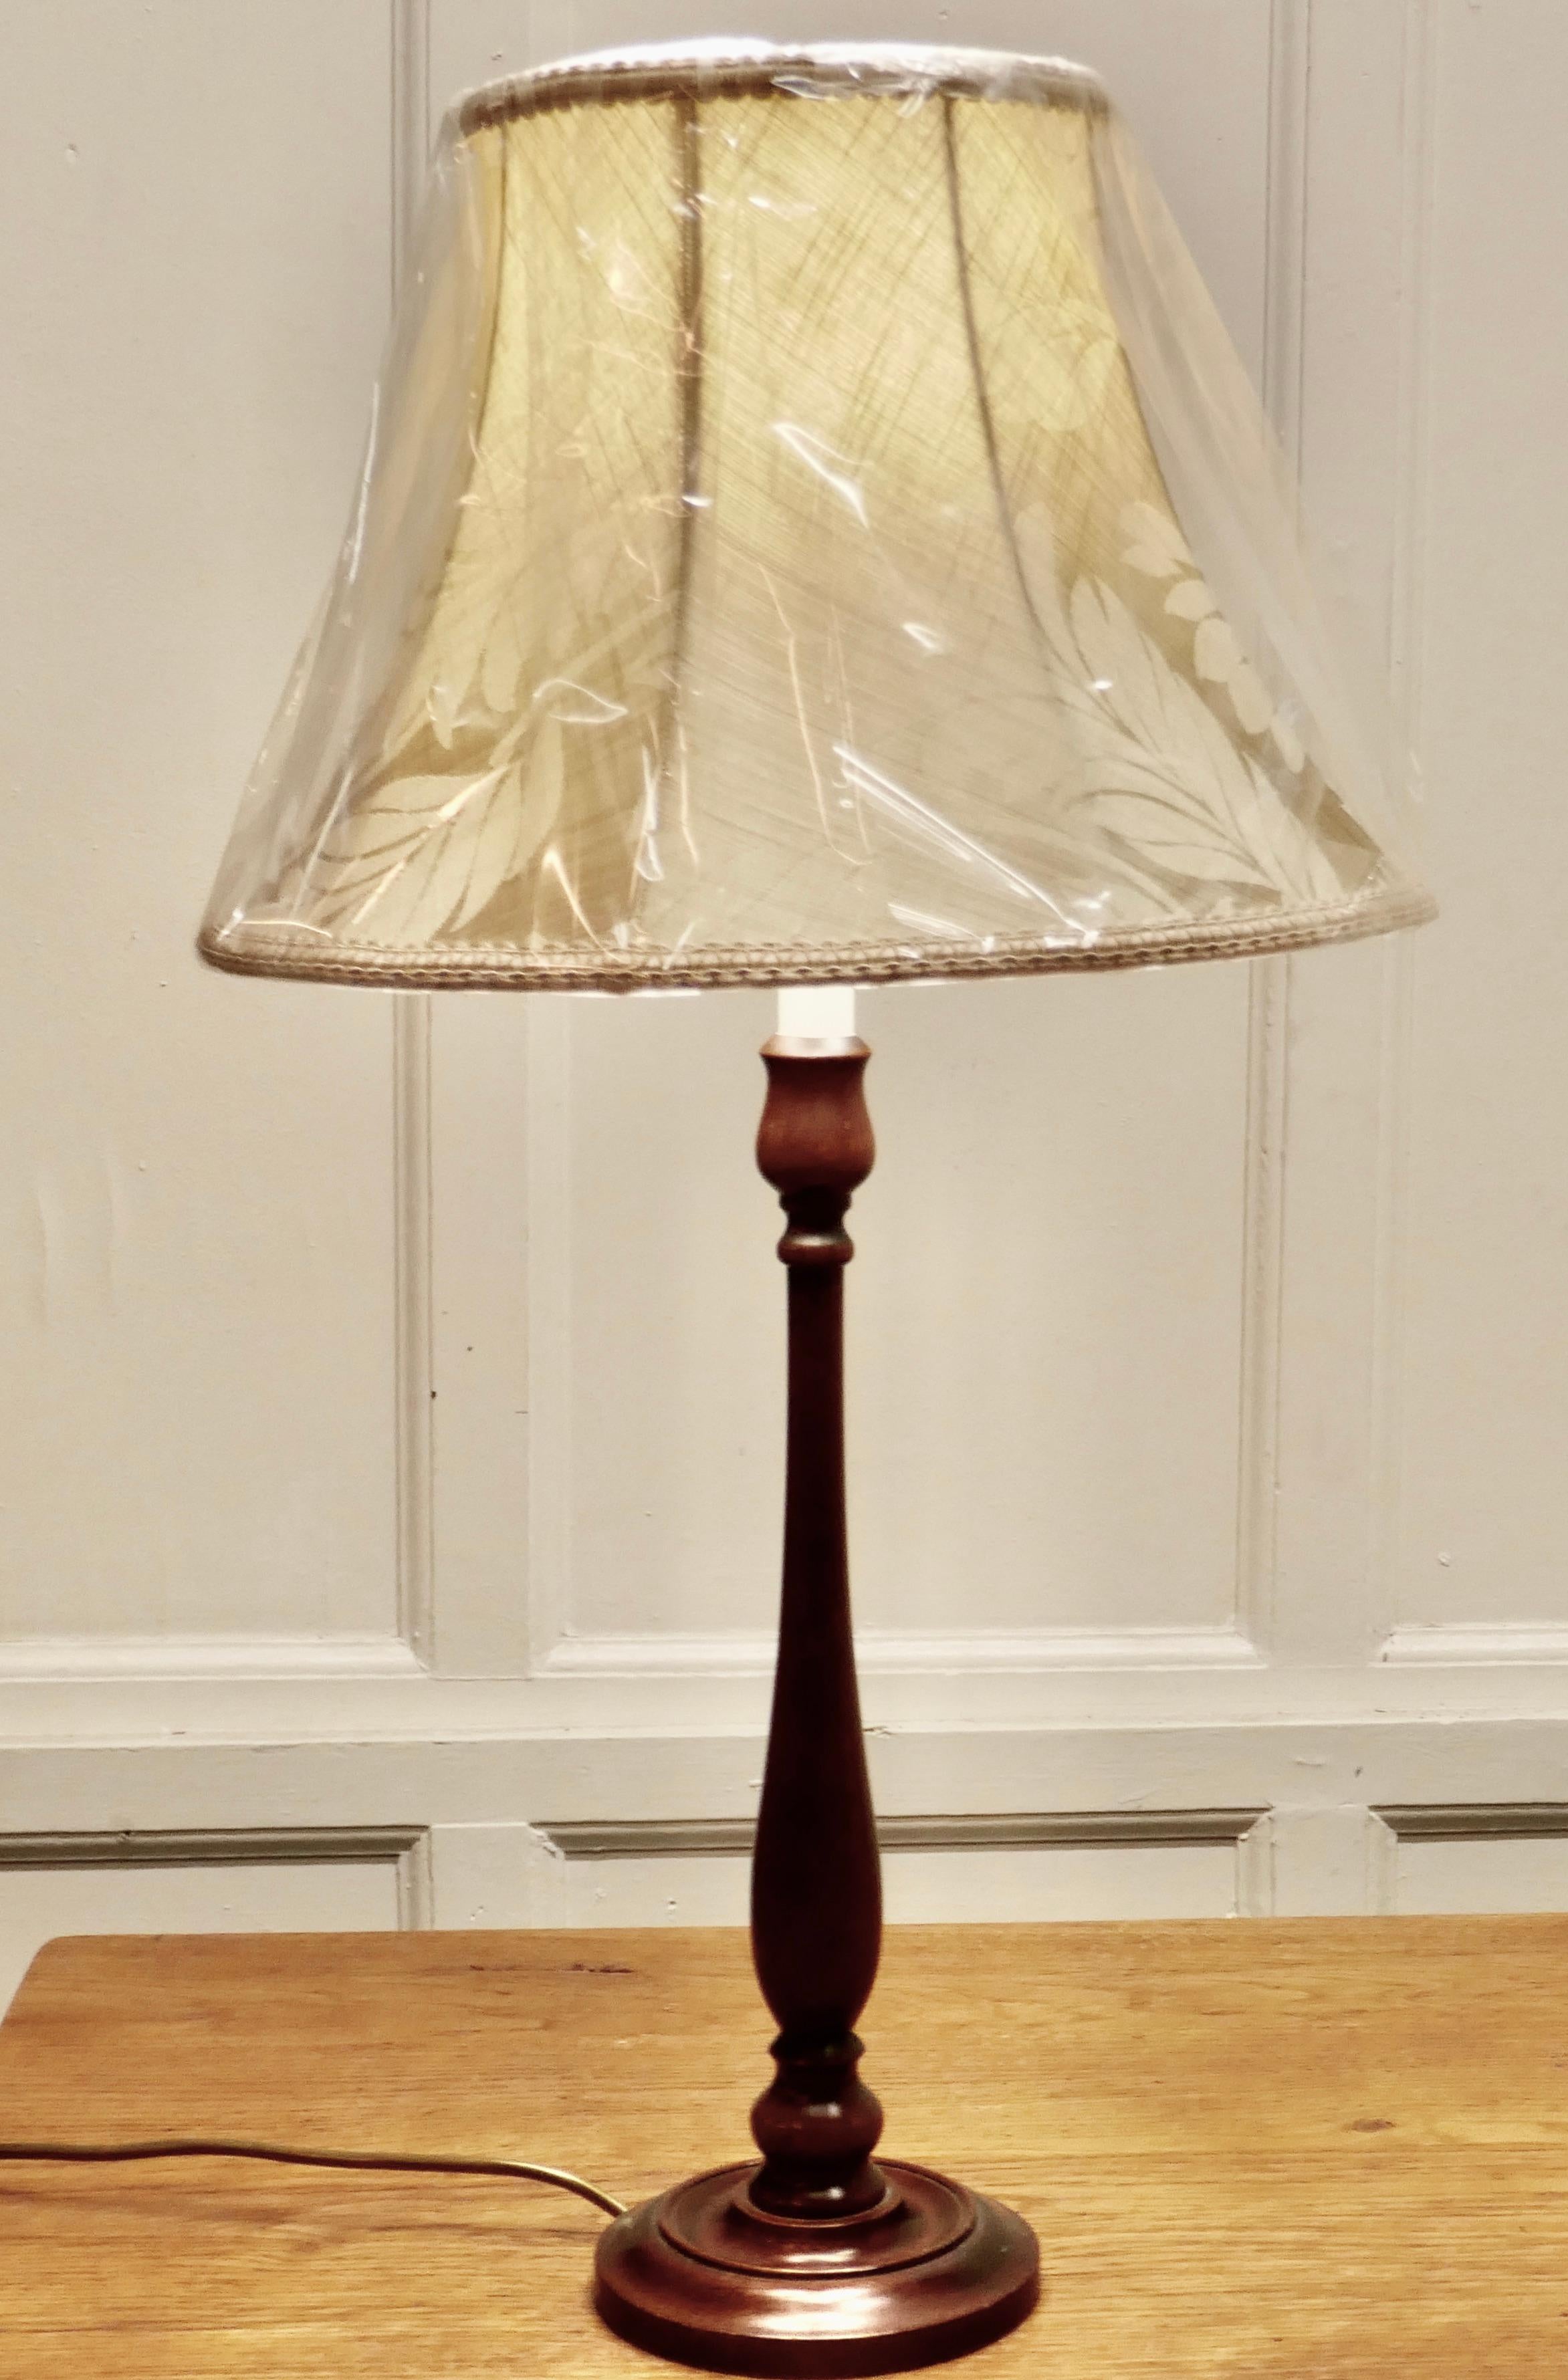 Tischlampe aus gedrechseltem Mahagoni

Dies ist ein attraktives Stück in poliertem Mahagoni, die Lampe steht auf einem gedrechselten Holzsockel, der Ständer ist leicht gedrechselt mit einer simulierten Kerze an der Spitze
Die Lampe kommt mit